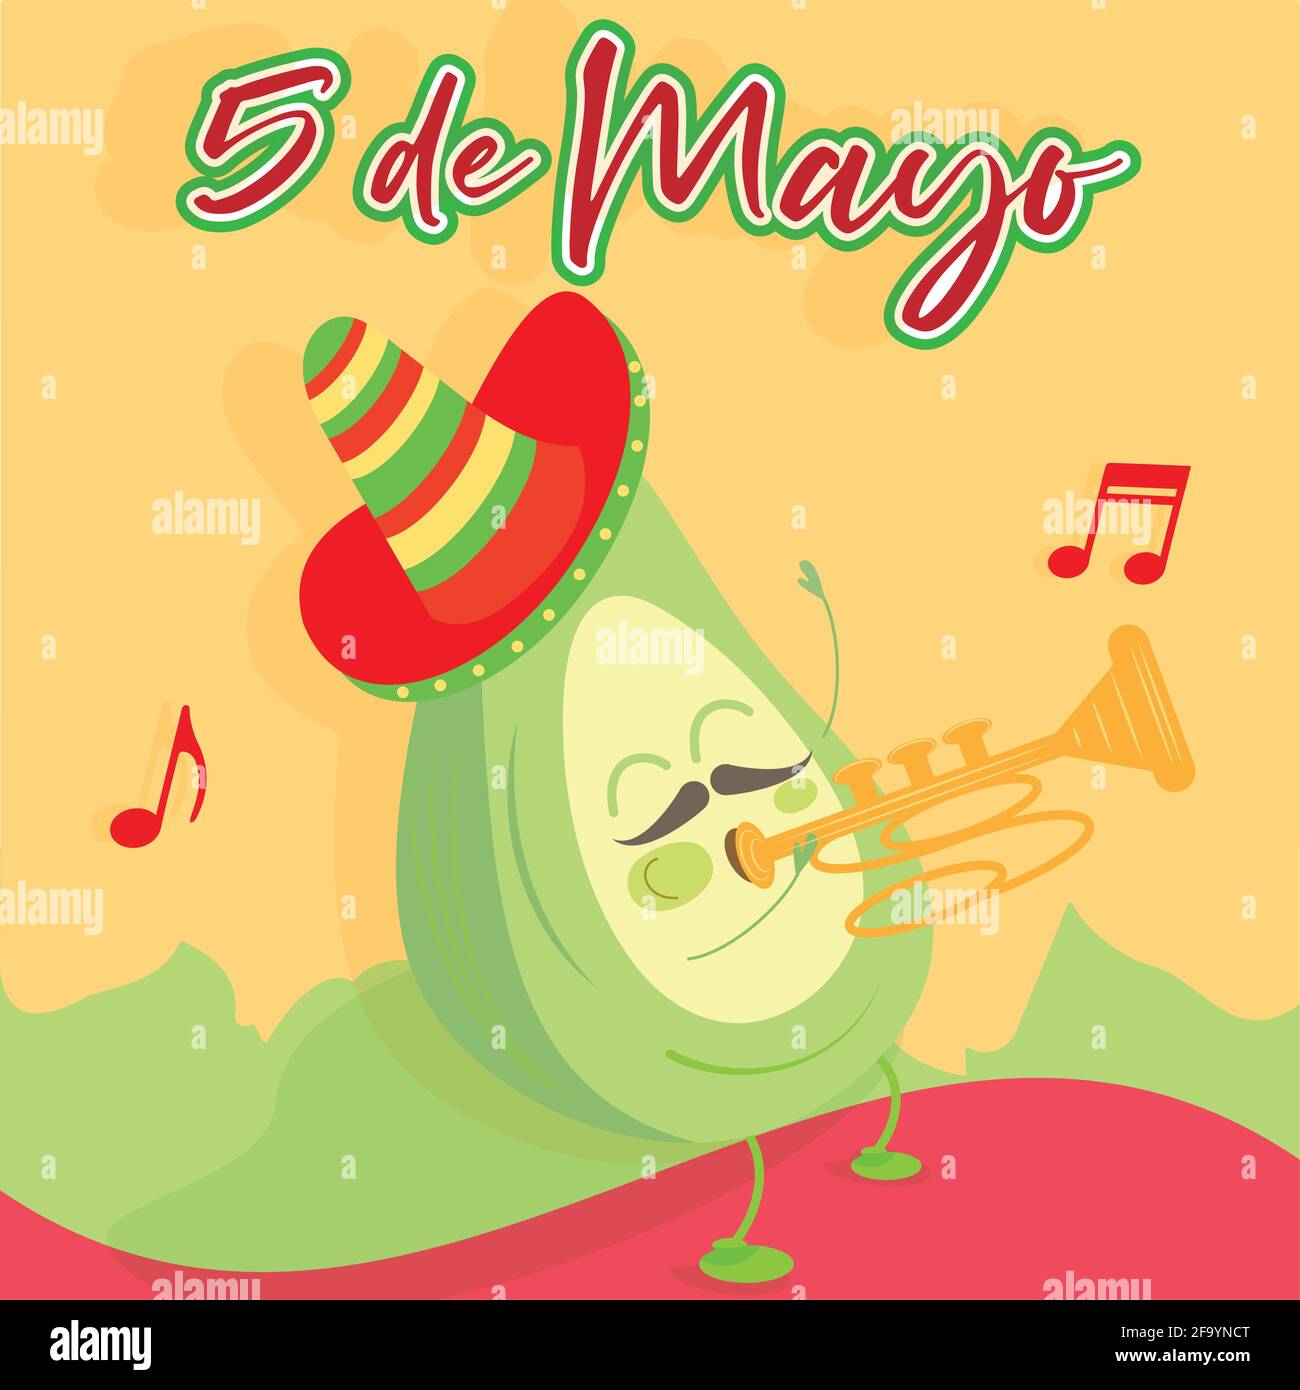 Cartoon of a mexican trumpeter avocado. cinco de mayo poster - Vector Stock Vector